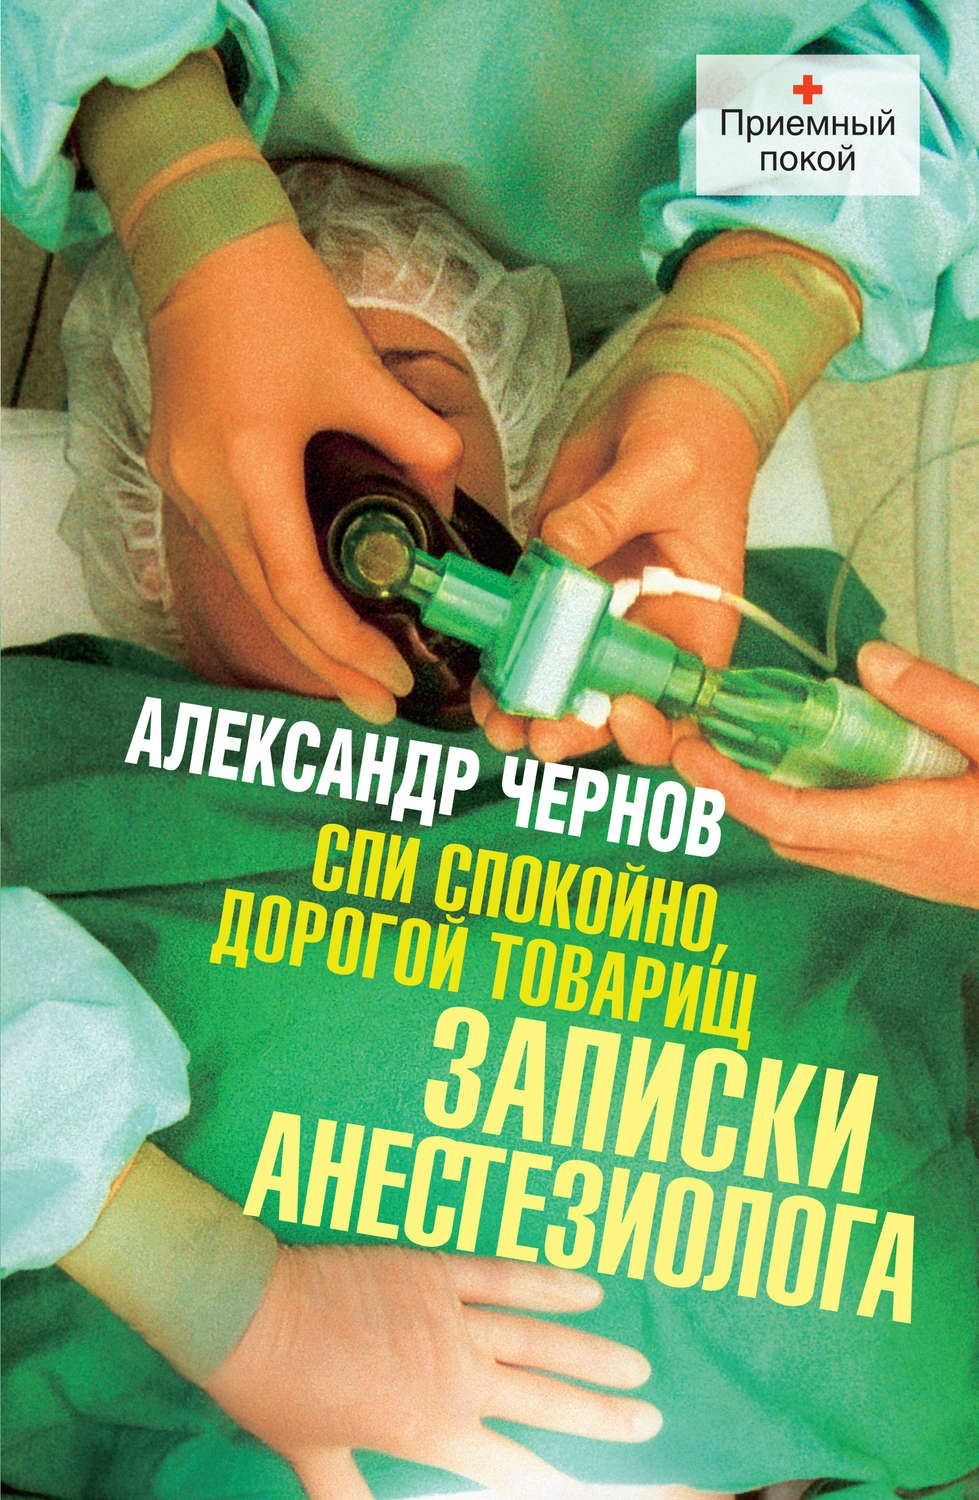 Книга врача анестезиолога